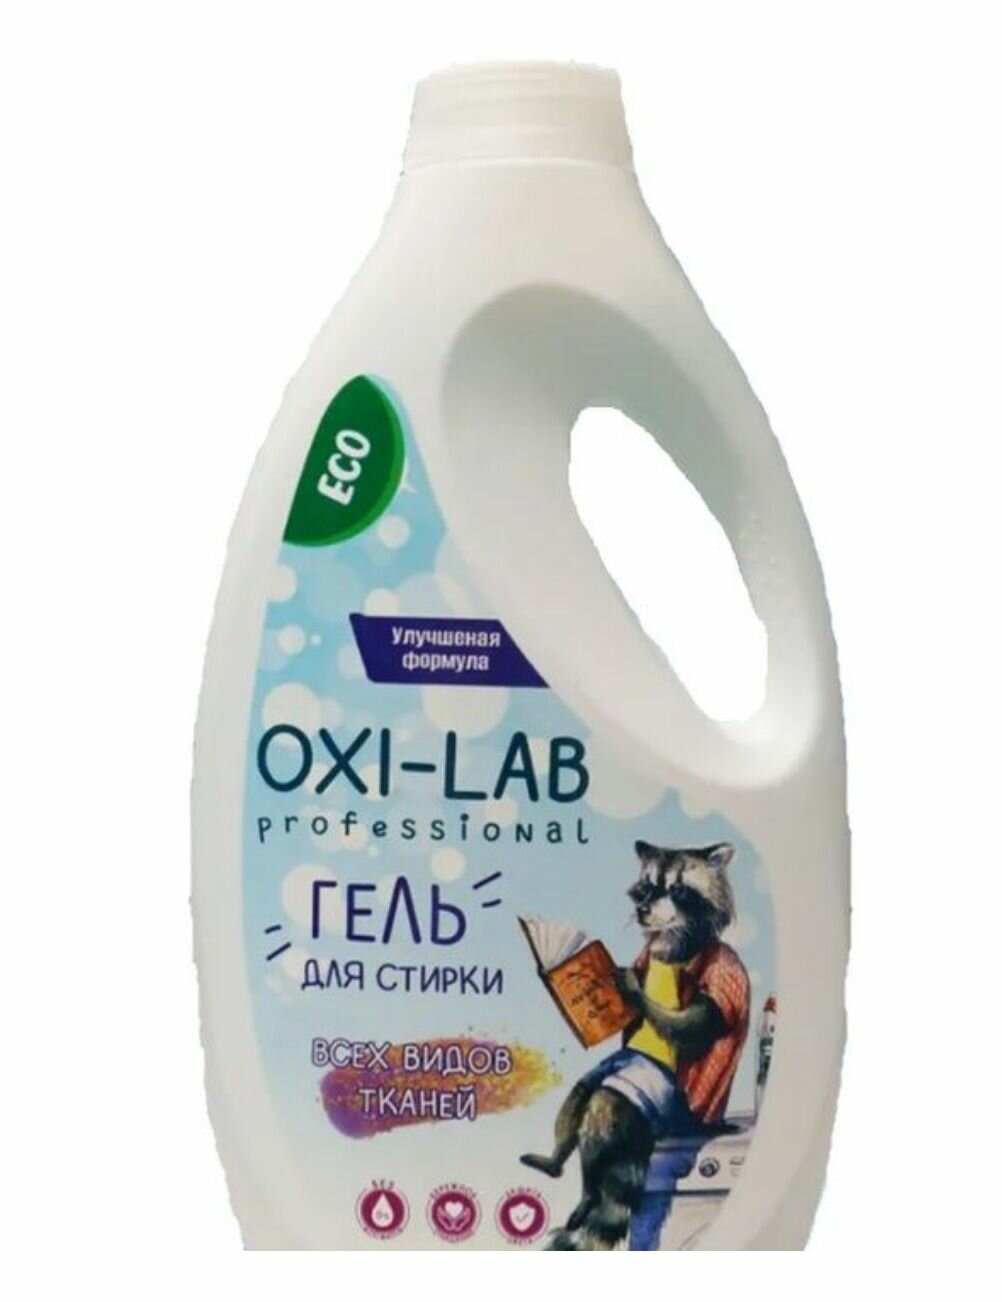 Oxi-Lab Гель для стирки, для всех видов тканей, 2 л